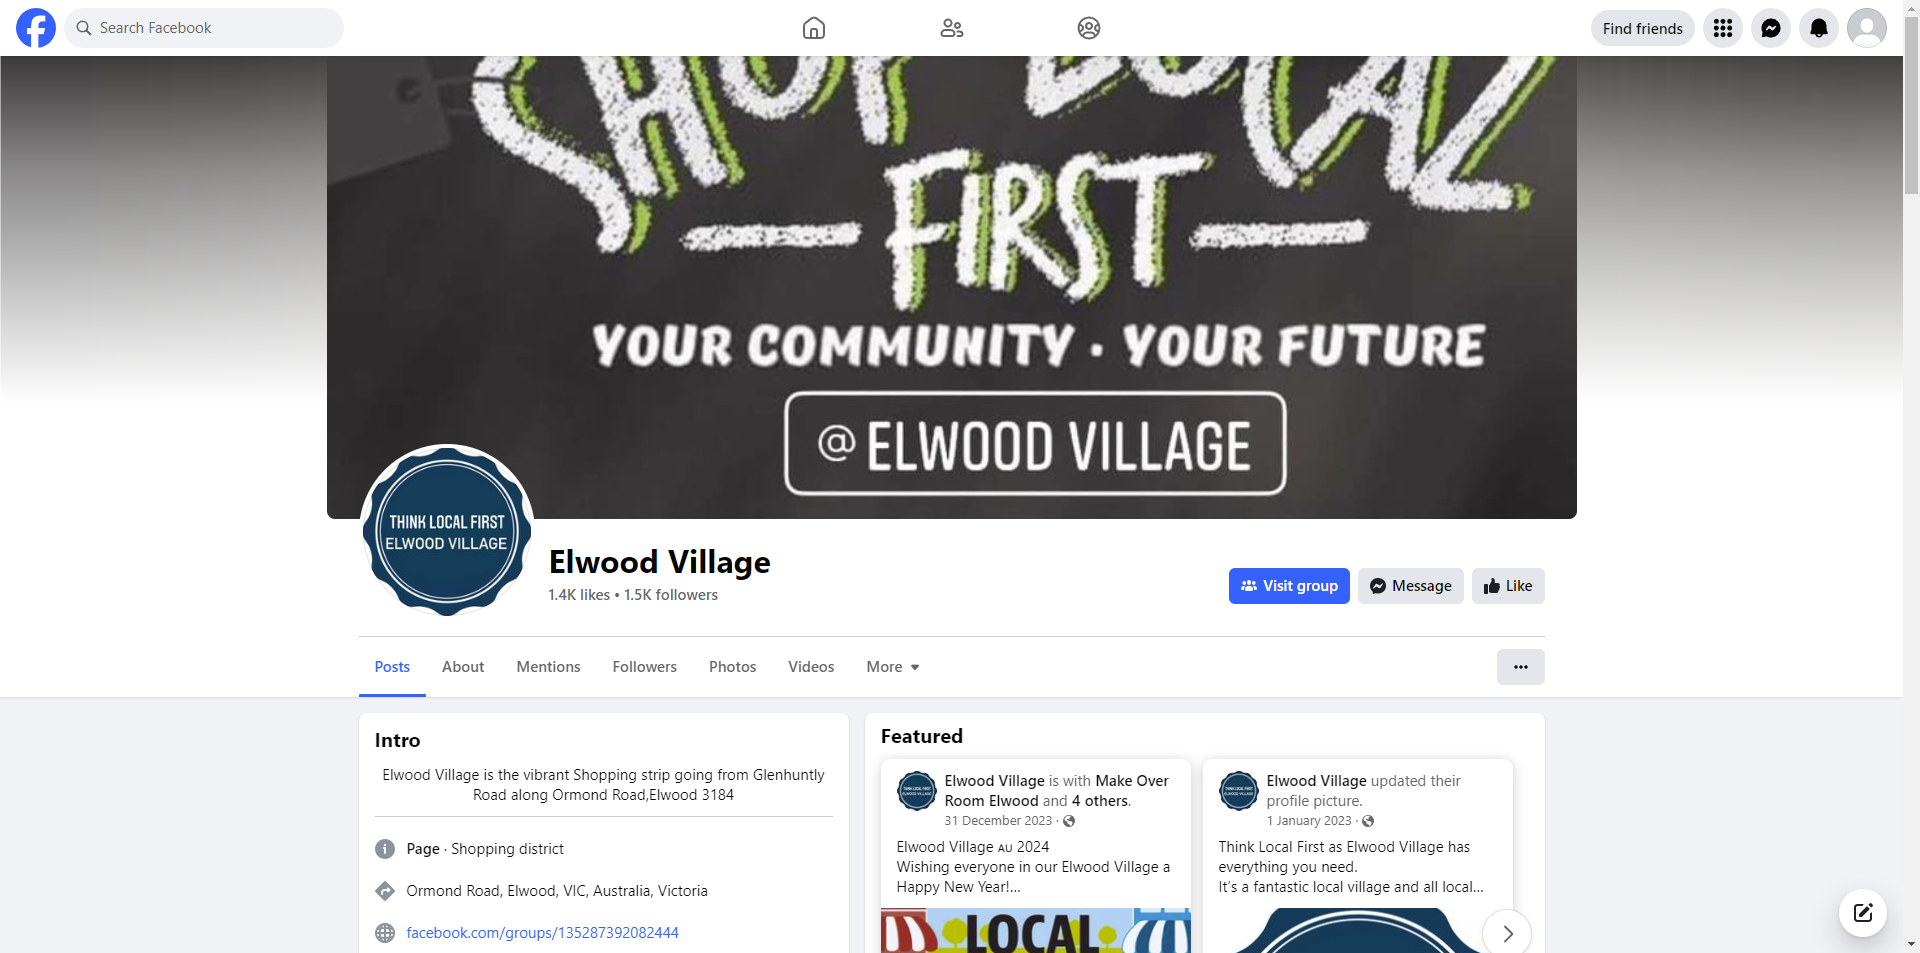 Elwood Village